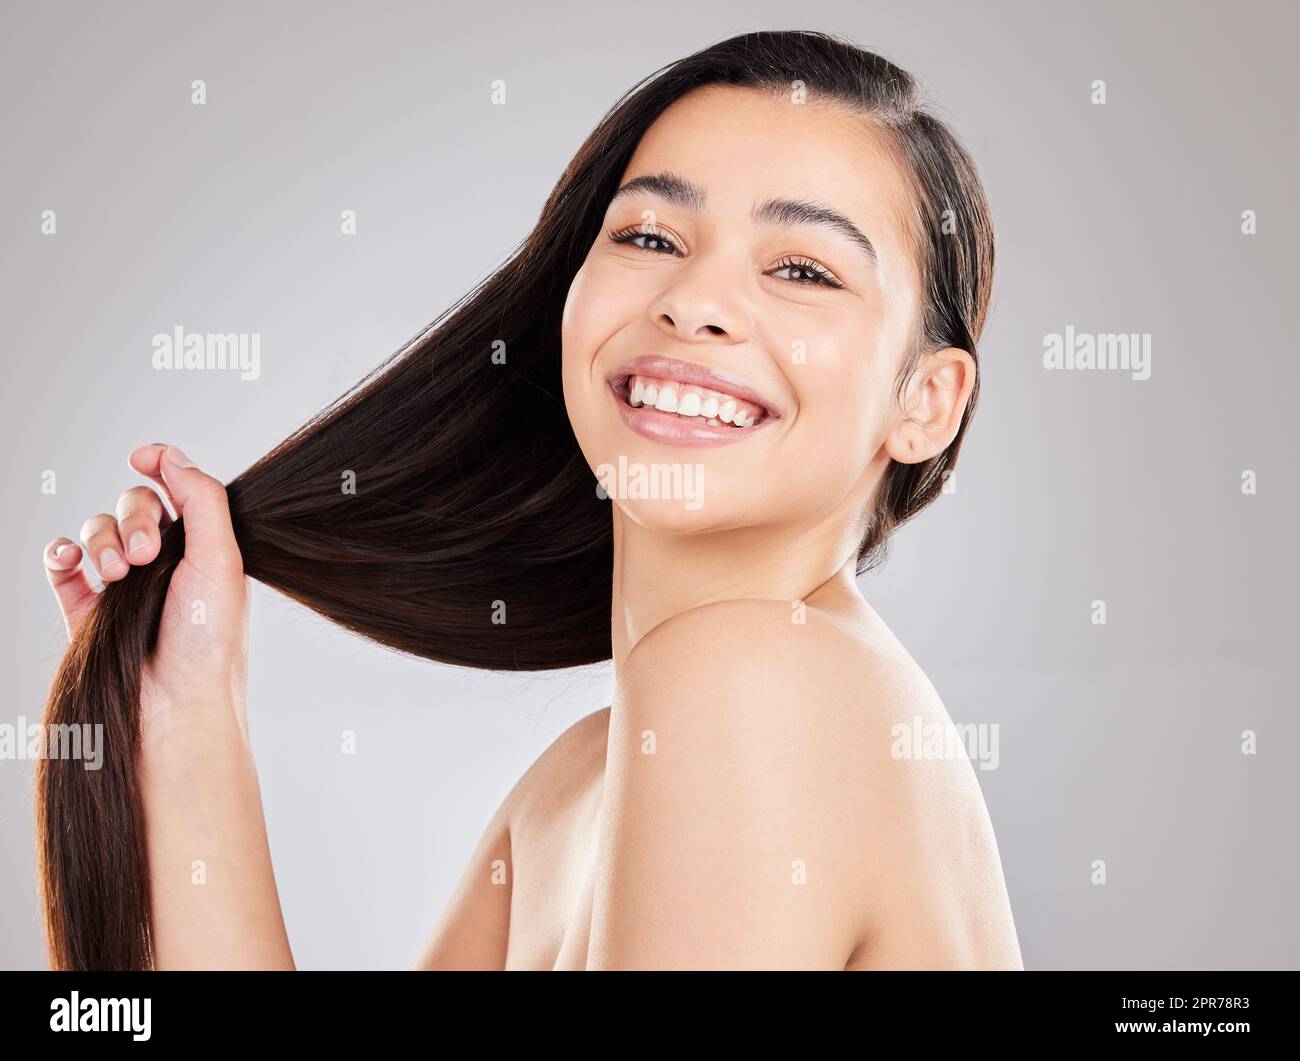 Gutes Haar ist gesundes Haar, was auch immer Sie wahrnehmen. Studioaufnahme einer jungen Frau mit schönen langen Haaren. Stockfoto